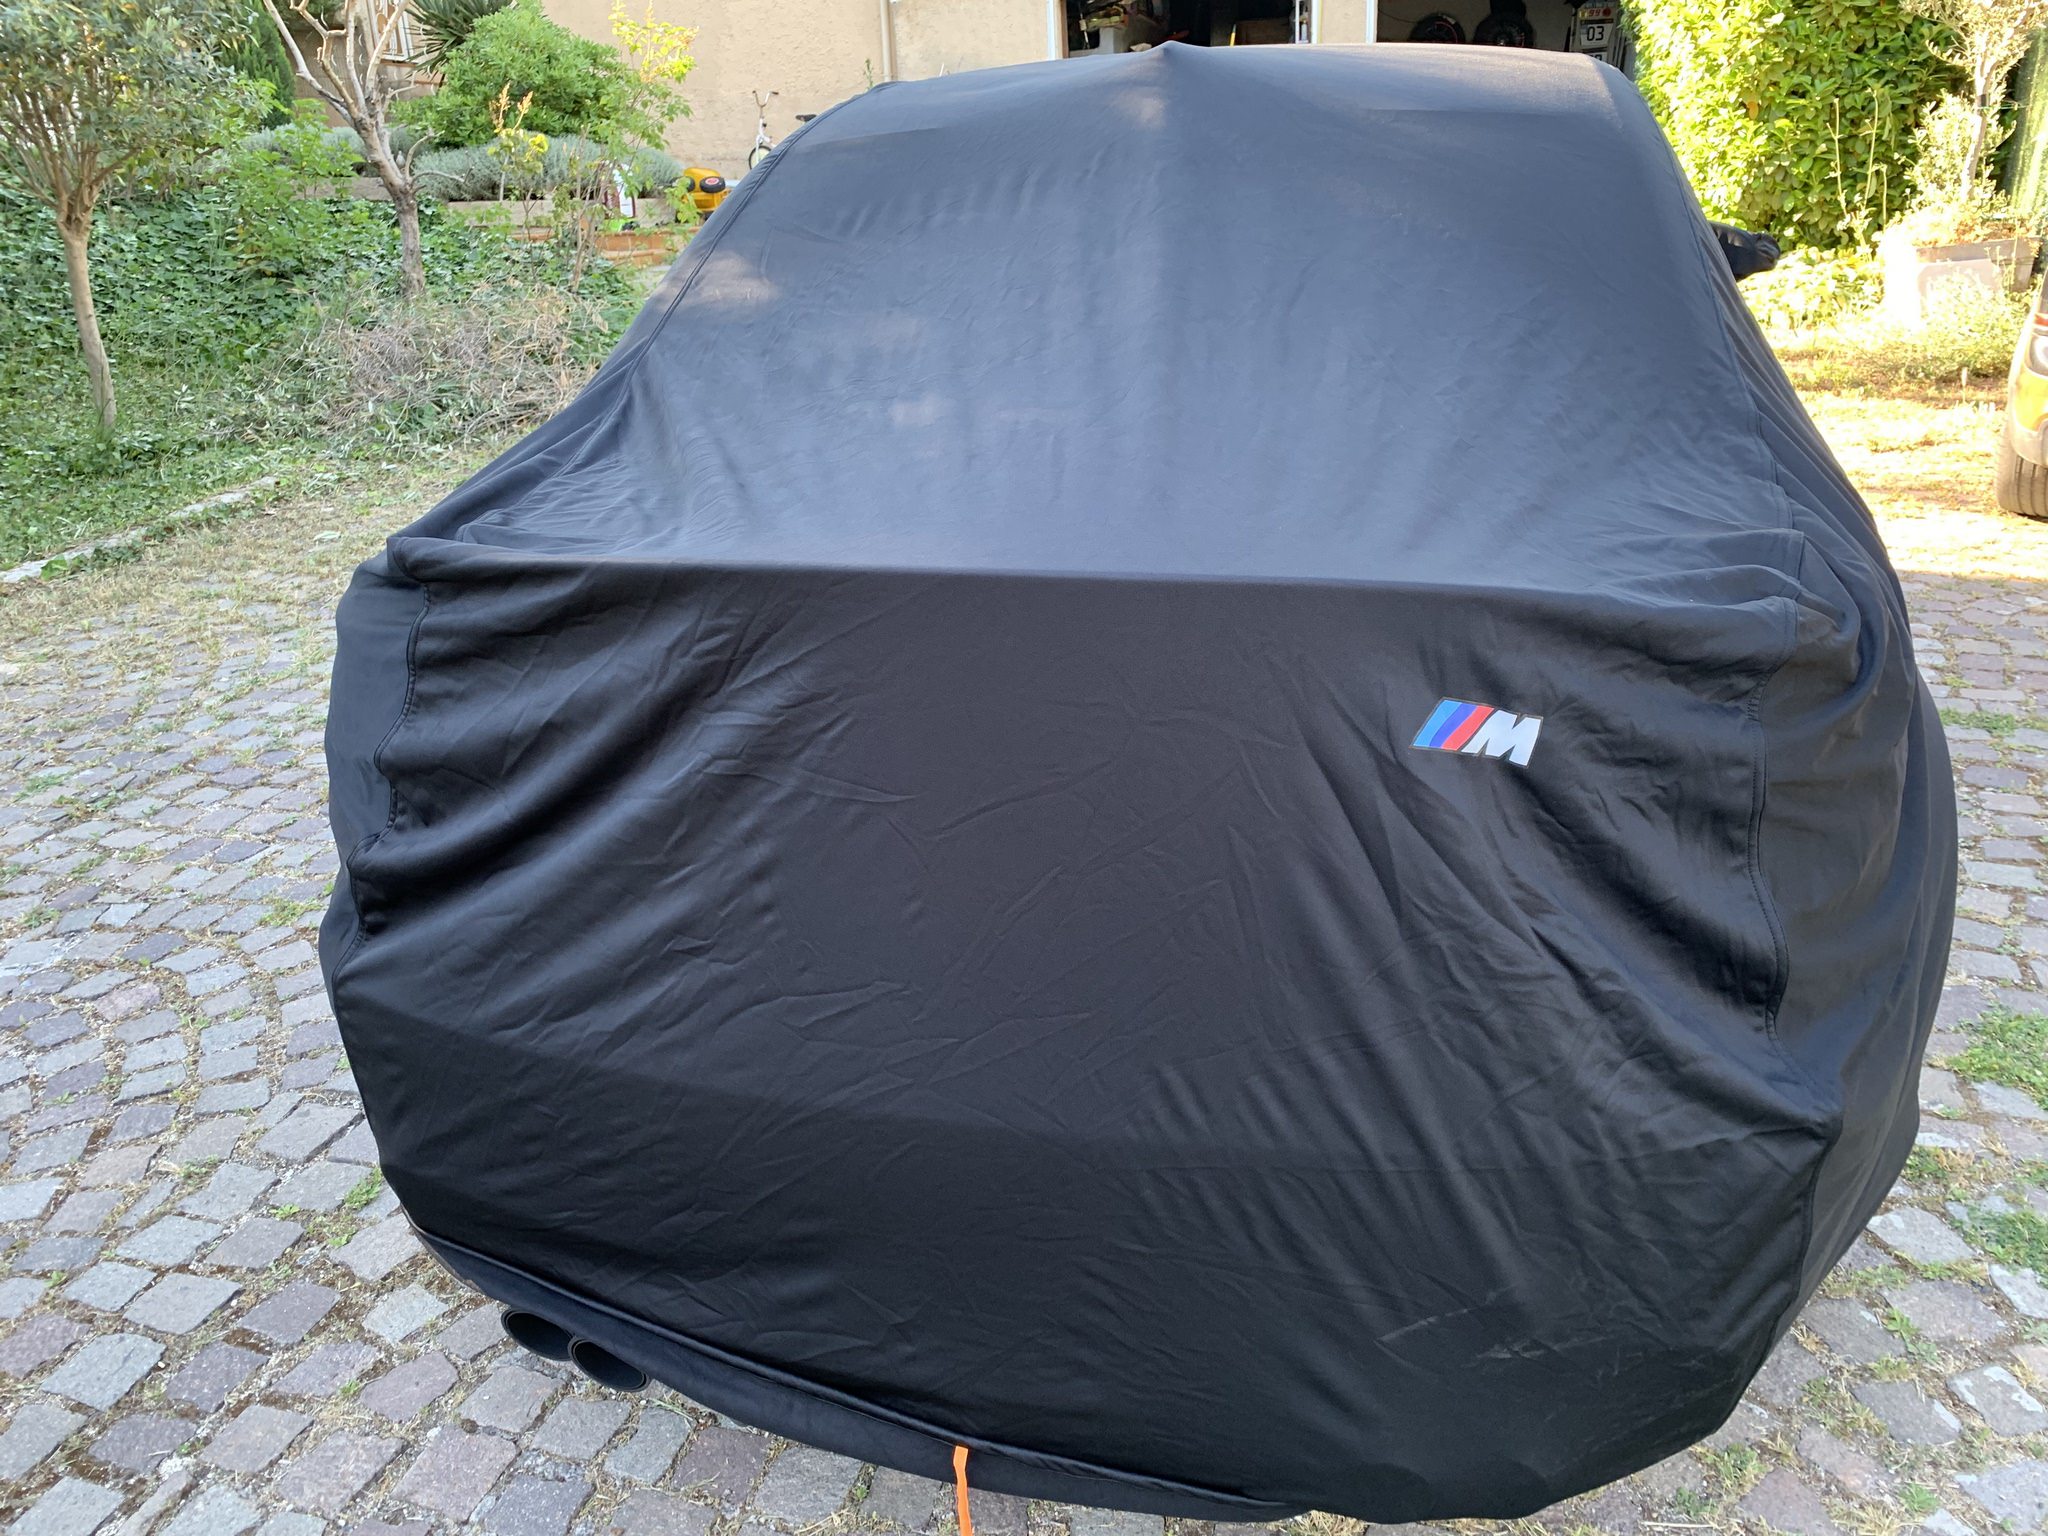 Housse de protection extérieur pour BMW Z3 E36